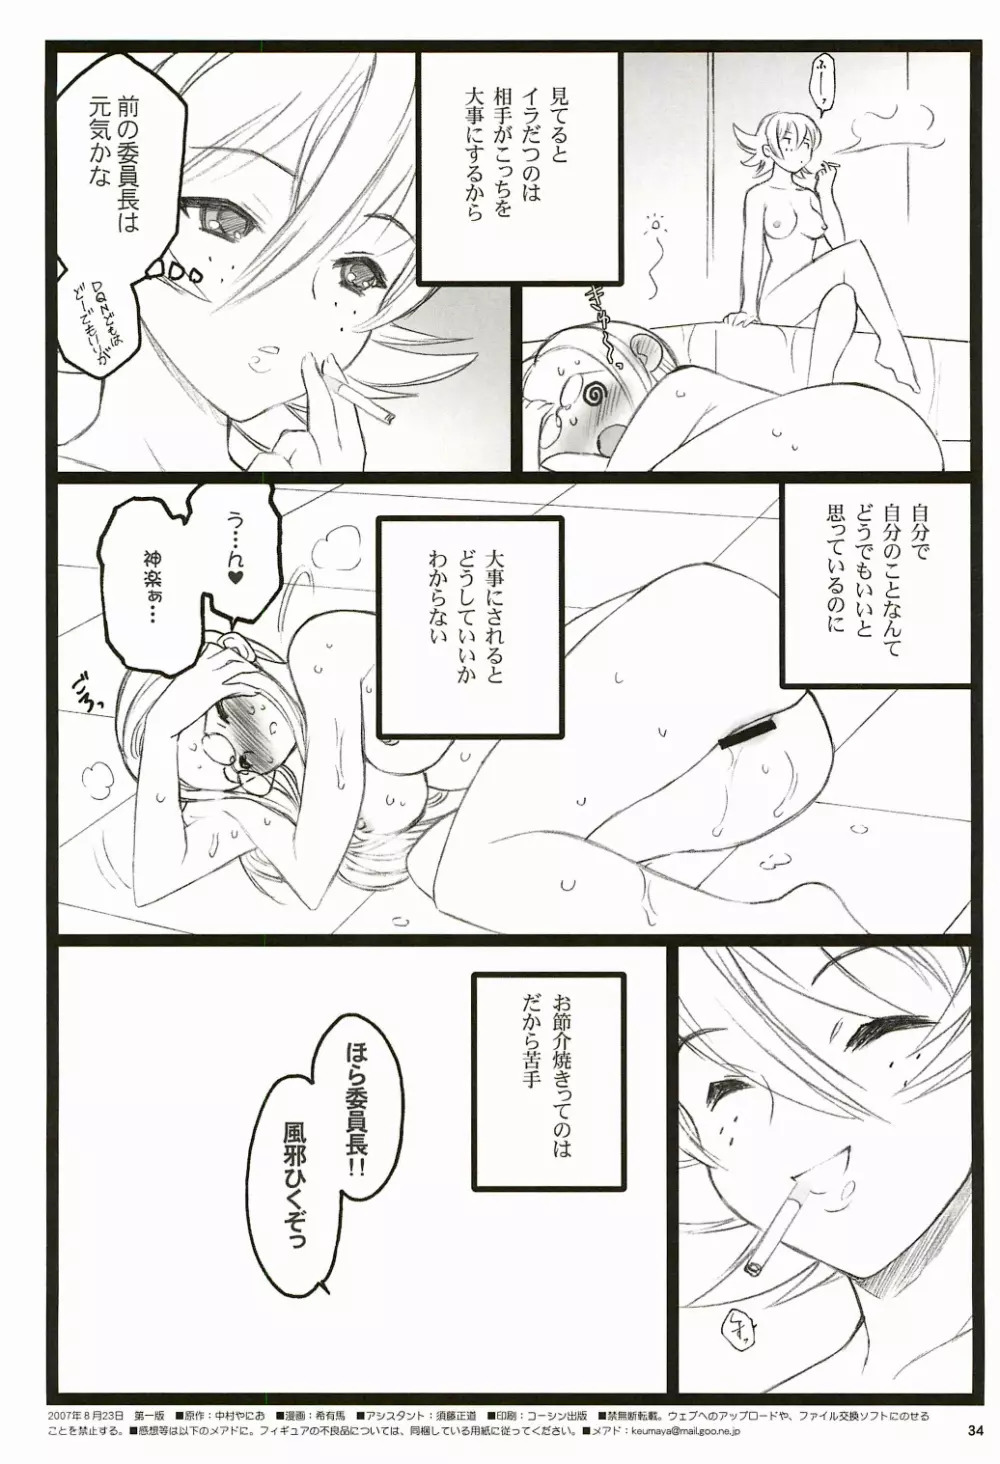 ツバサBB付属本 KF18禁エロ漫画 34ページ